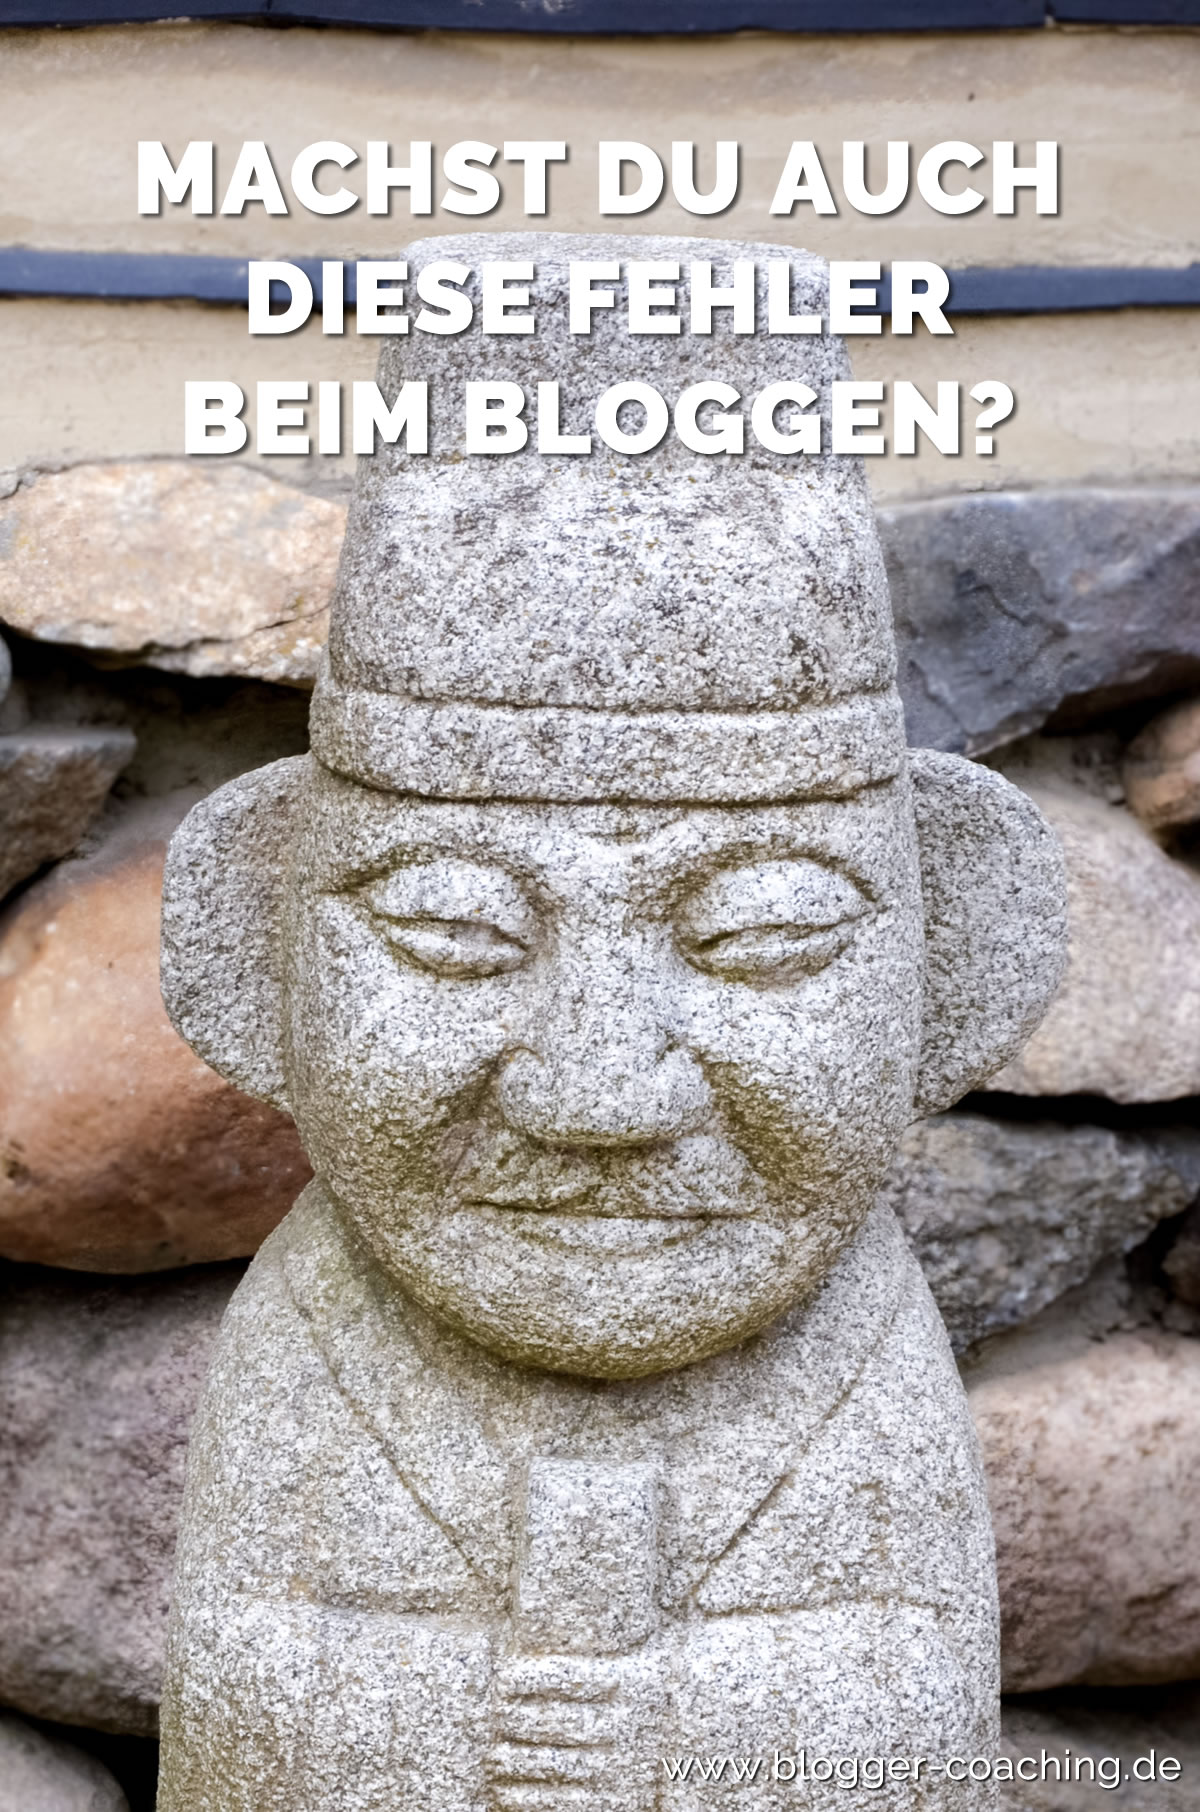 6 Anfängerfehler beim Bloggen und wie du sie vermeidest 1/3 | Blogger-Coaching.de - Erfolgs-Strategien für deinen Blog #blogger #erfolg